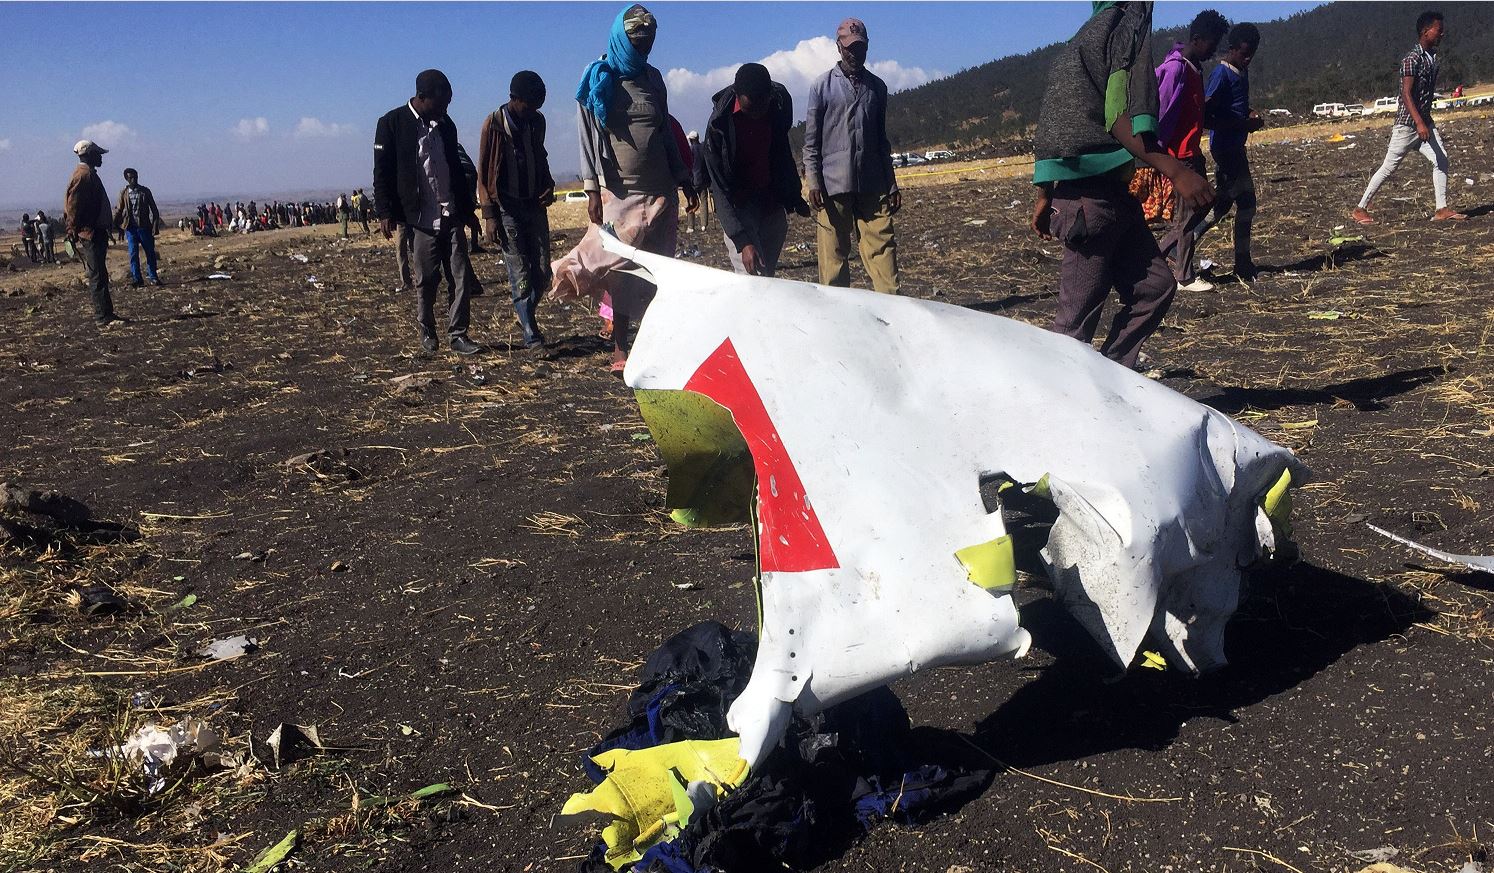 Foto: La gente pasa frente a una parte de los escombros en la escena del accidente aéreo de Ethiopian Airlines, 10 marzo 2019